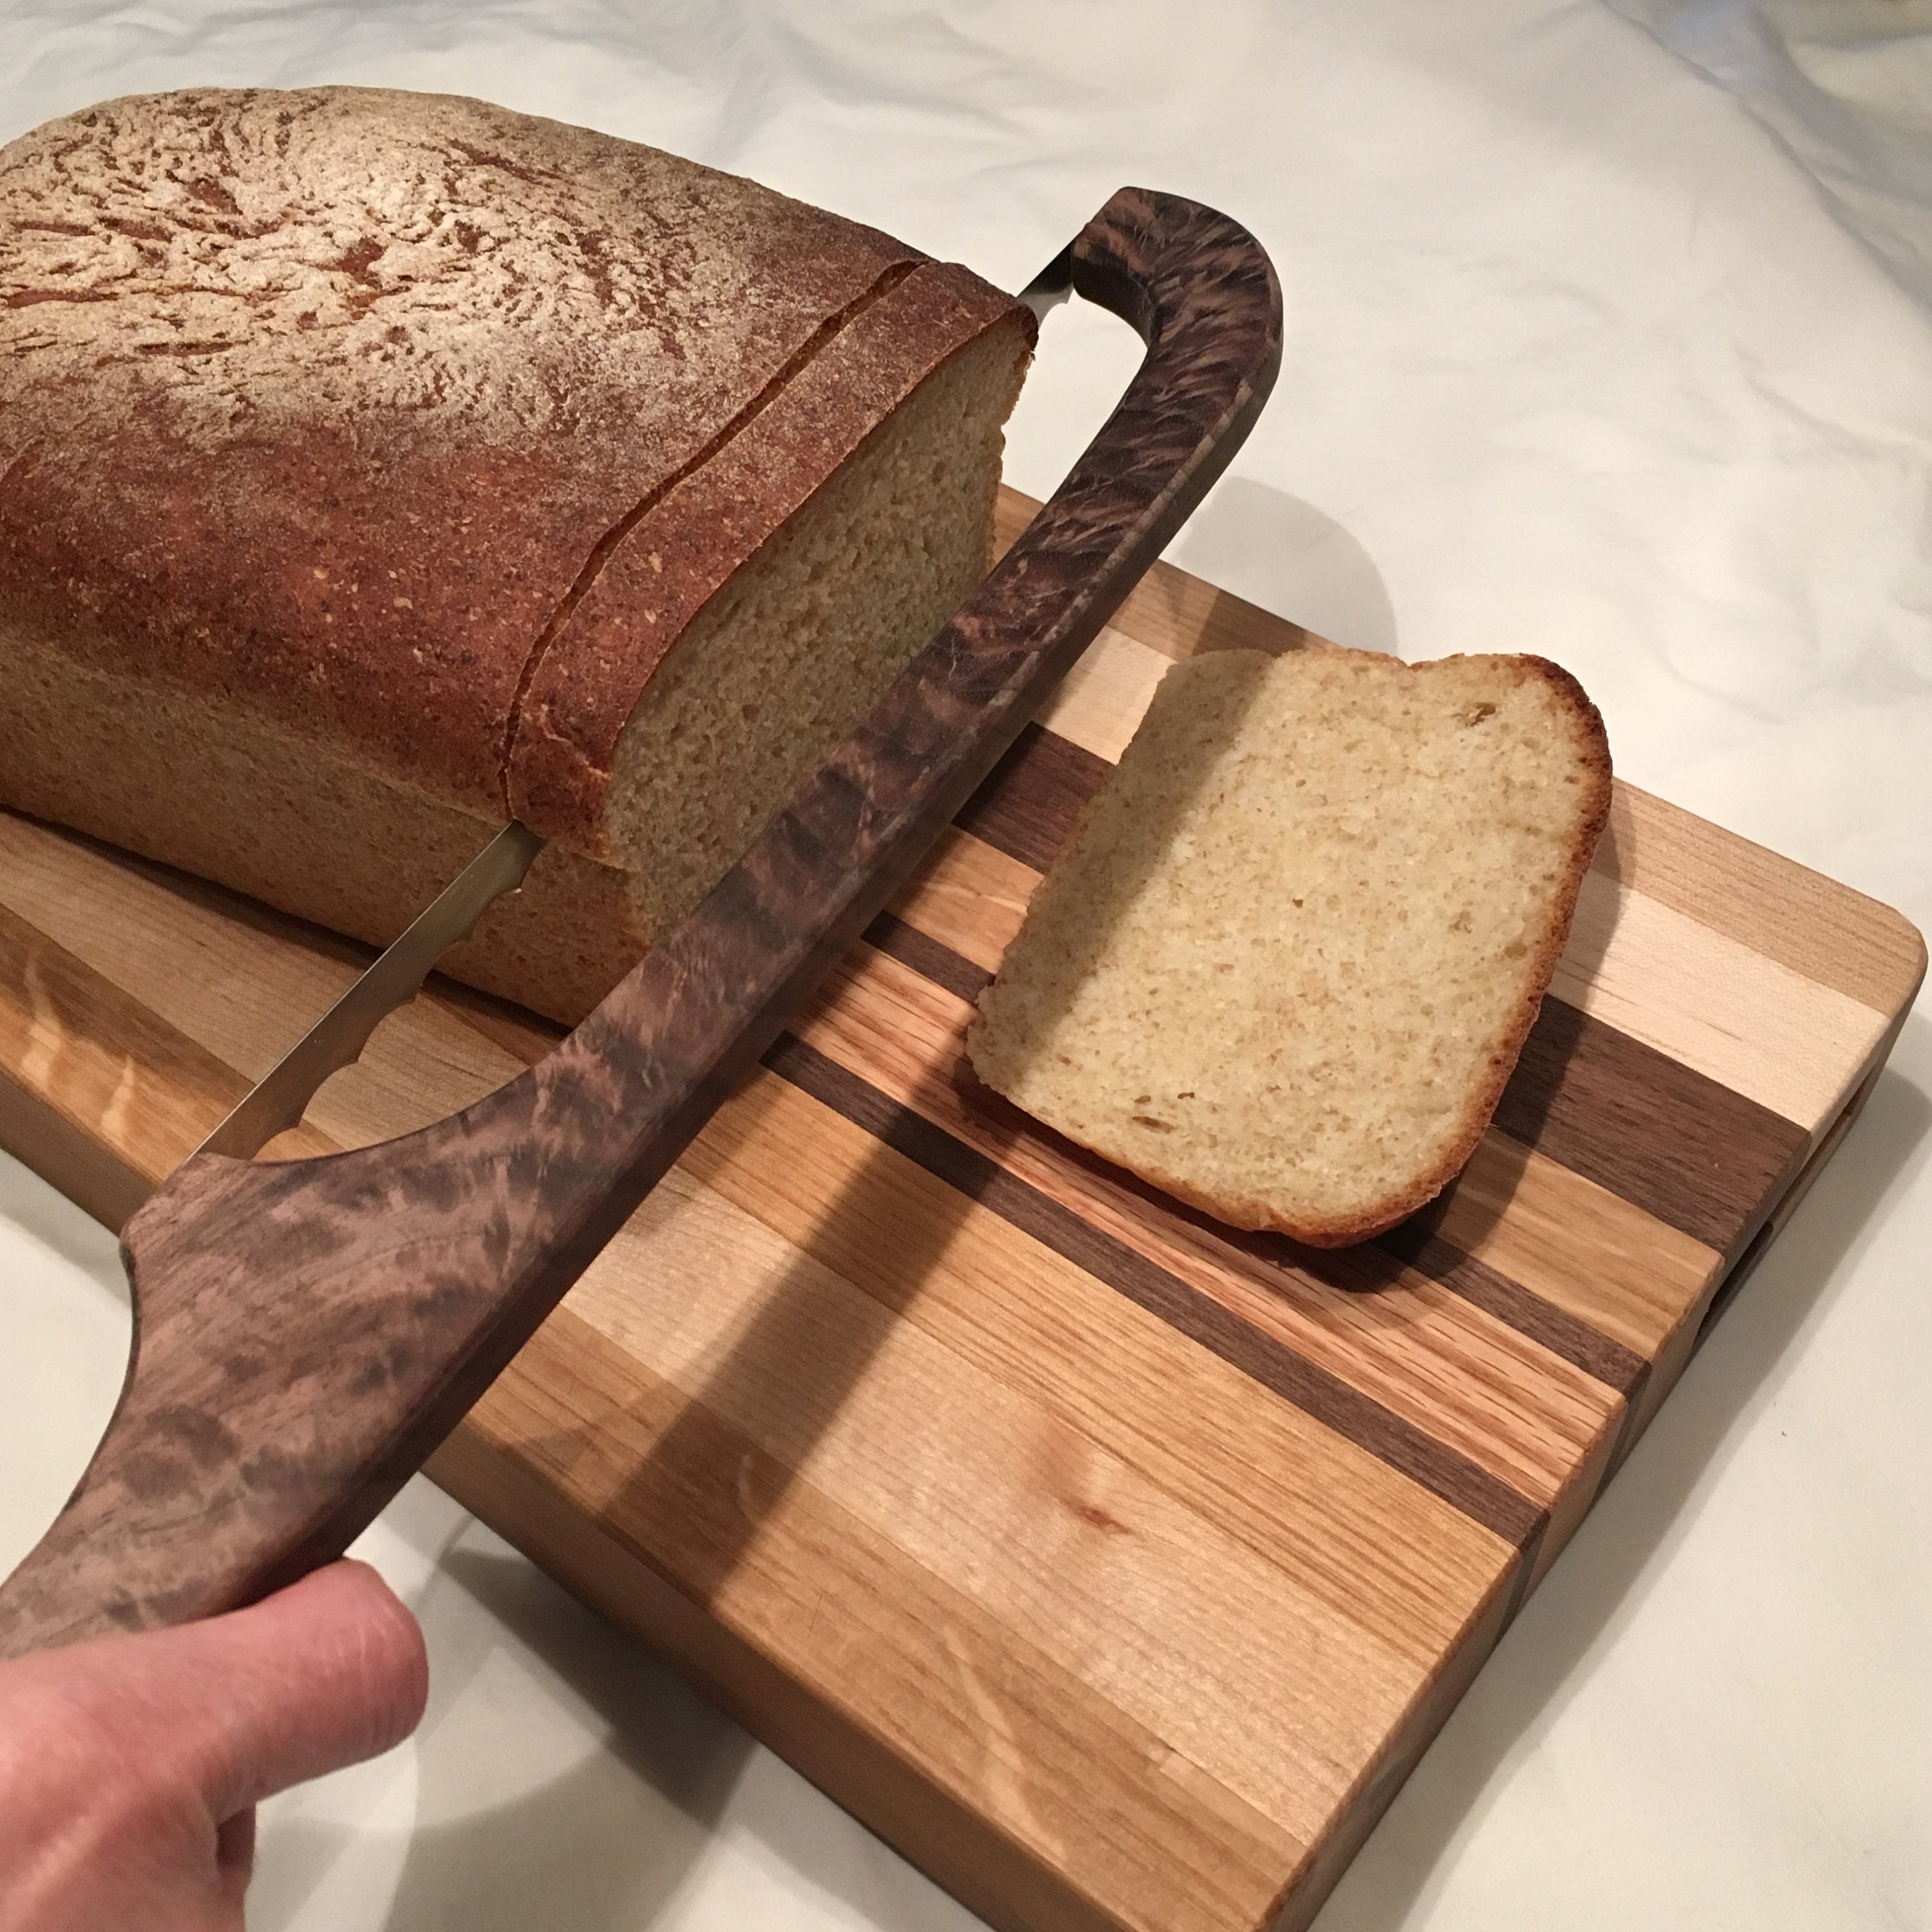 RIJIAKESEN Bread Knife,Bread Slicer, Sourdough Bread Slicer for Homemade  Bread, Natural Wooden Bow Design by Baker and Stainless Steel for Easy